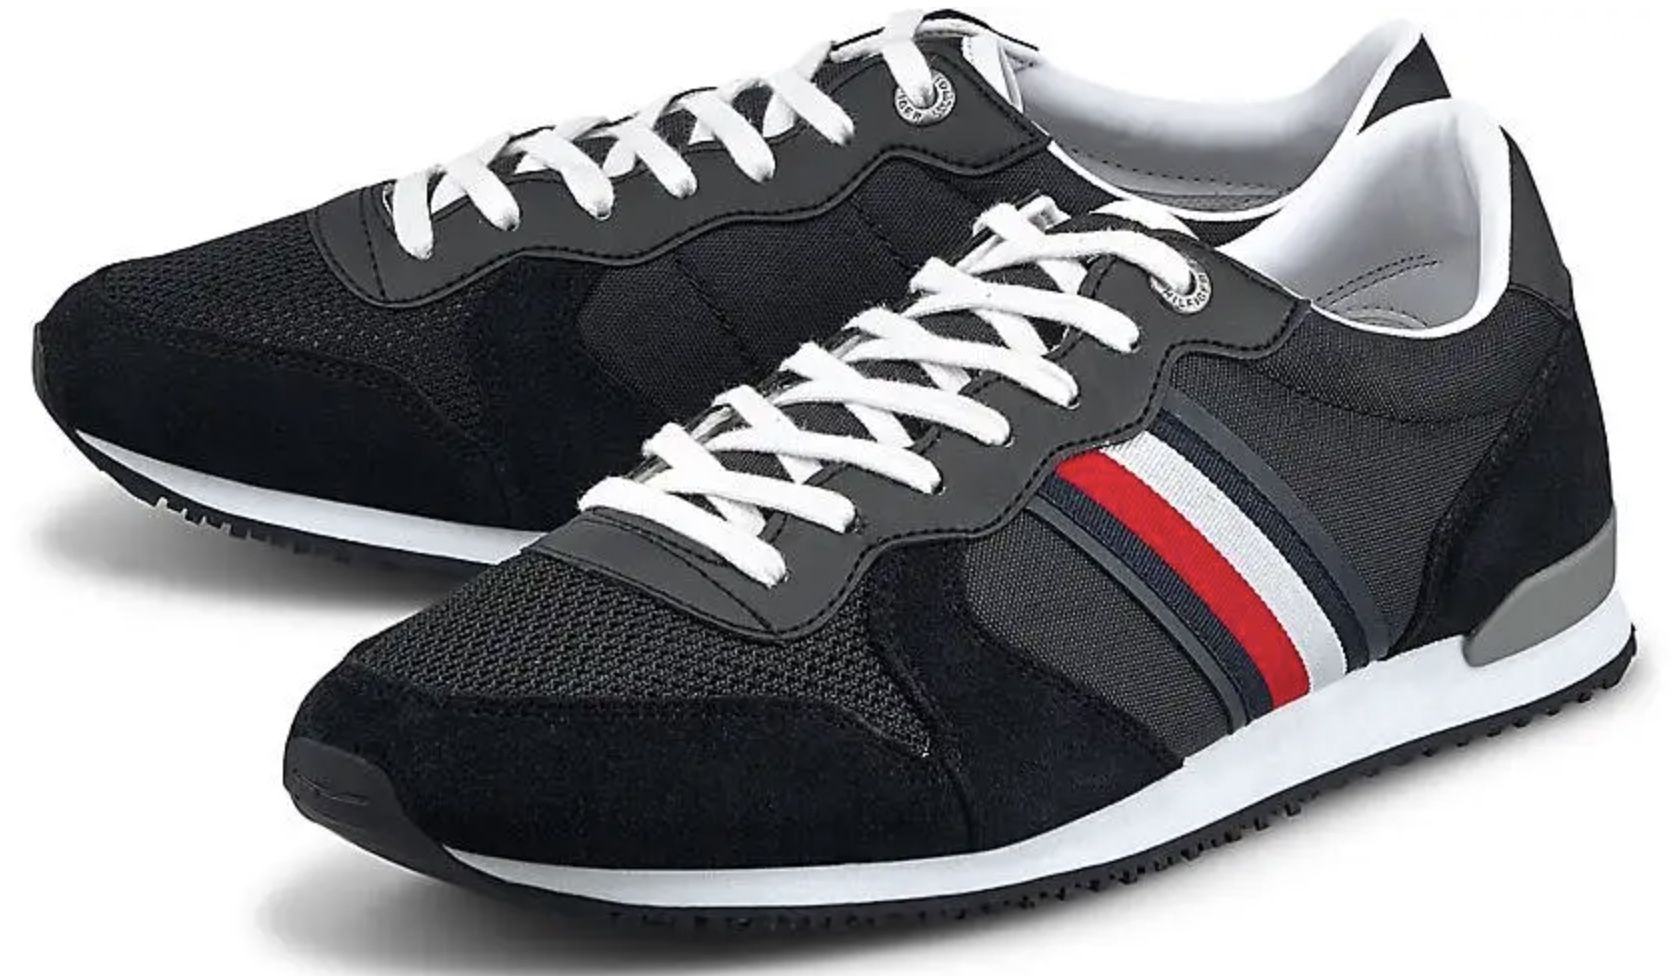 Tommy Hilfiger Iconic Runner Wildleder Sneaker für 40,48€ (statt 73€)   nur 40 bis 44